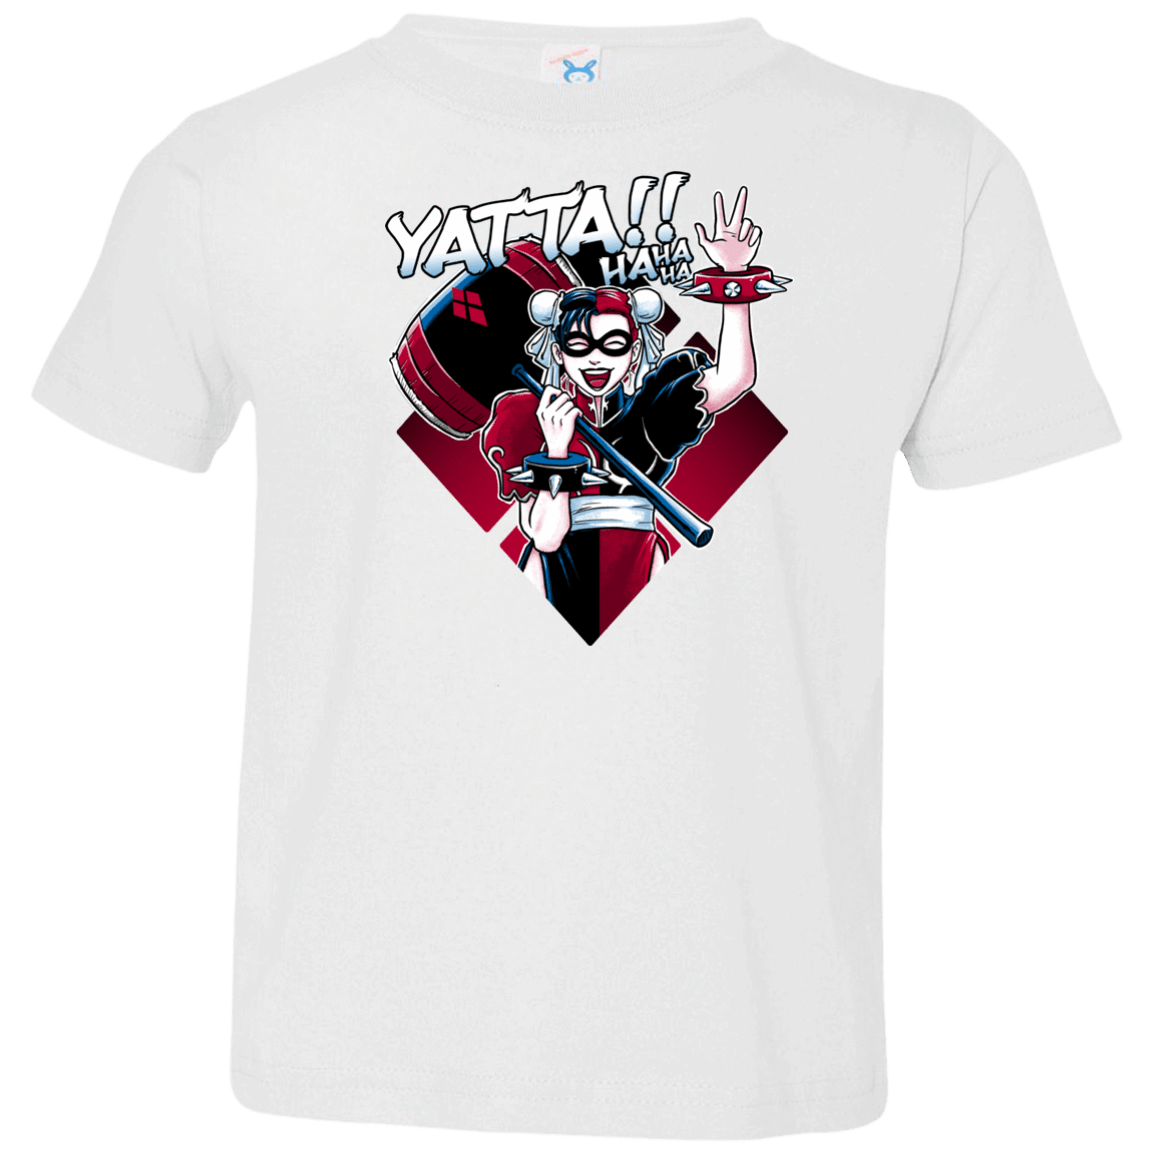 T-Shirts White / 2T Harley Yatta Toddler Premium T-Shirt